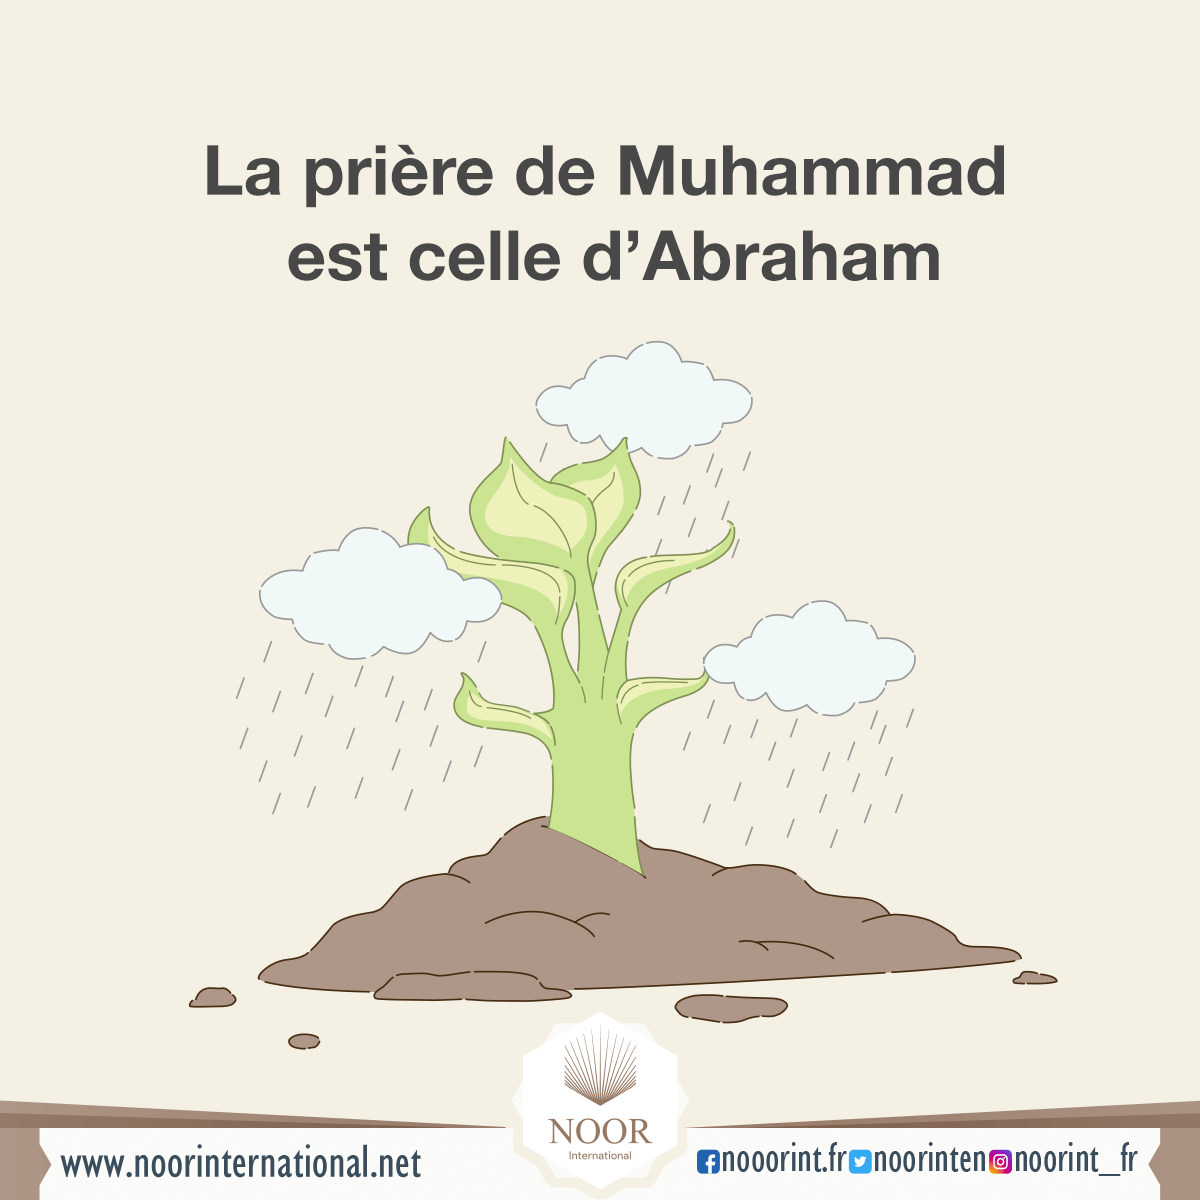 La prière de Muhammad est celle d’Abraham